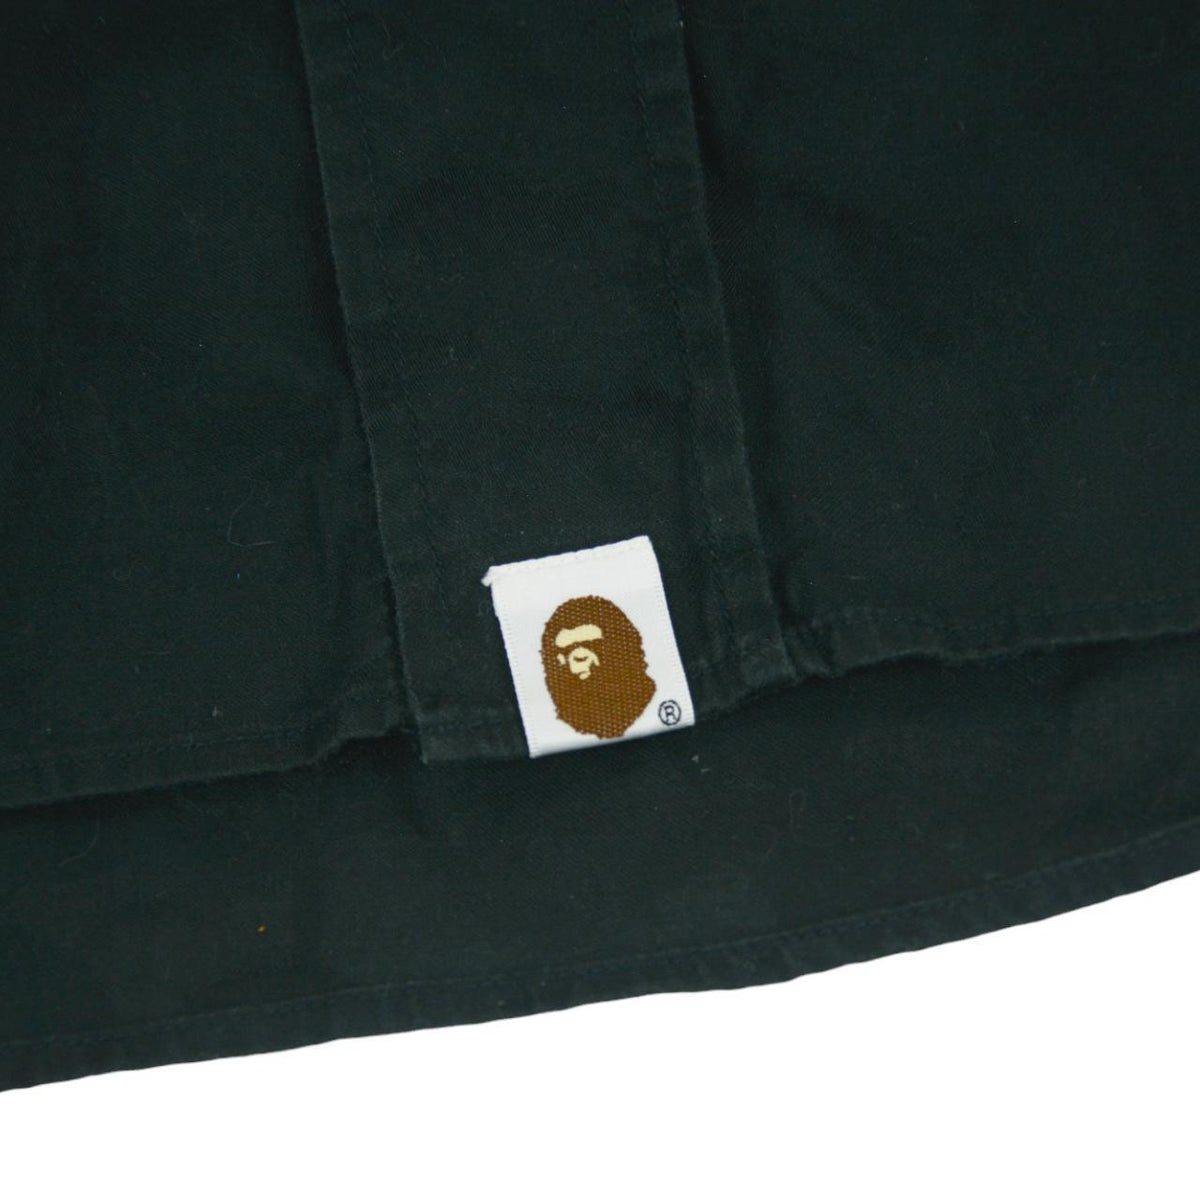 Vintage BAPE Button Up Shirt Size L